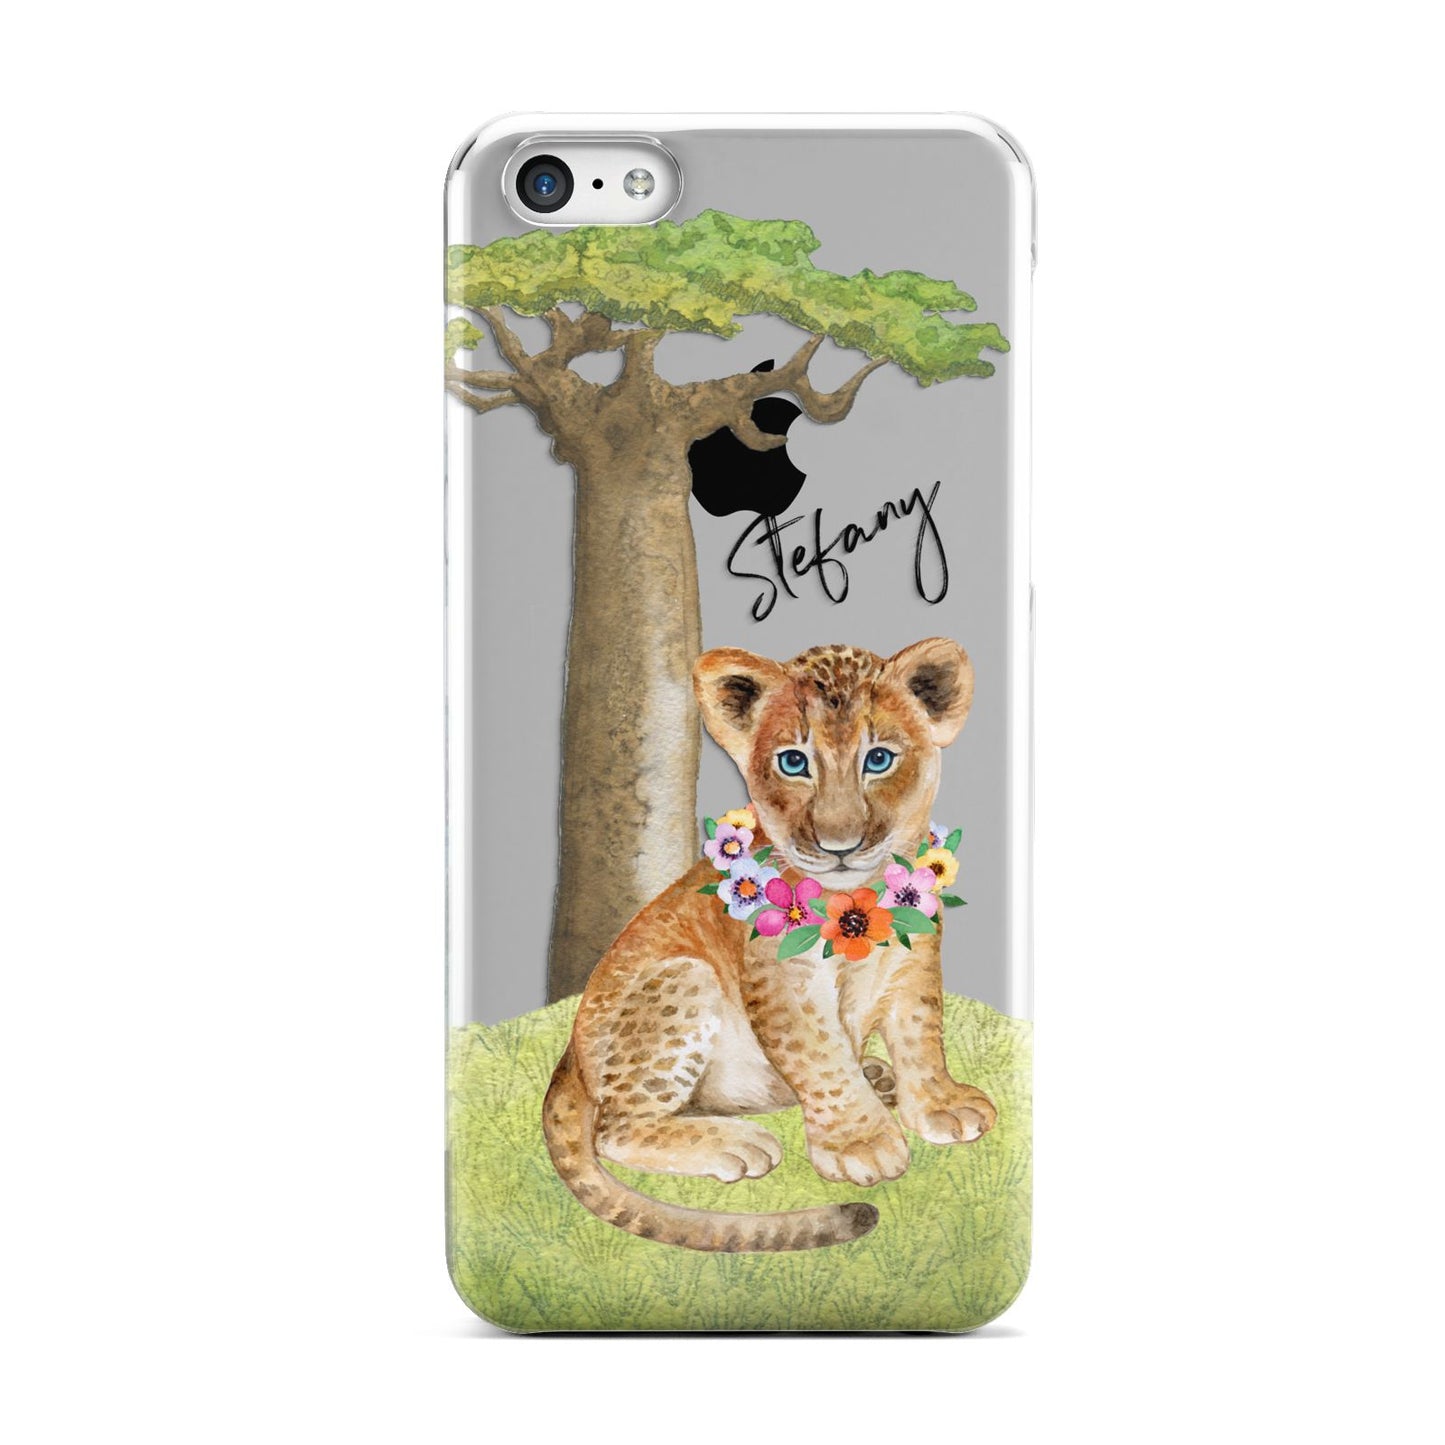 Personalised Lion Cub Apple iPhone 5c Case